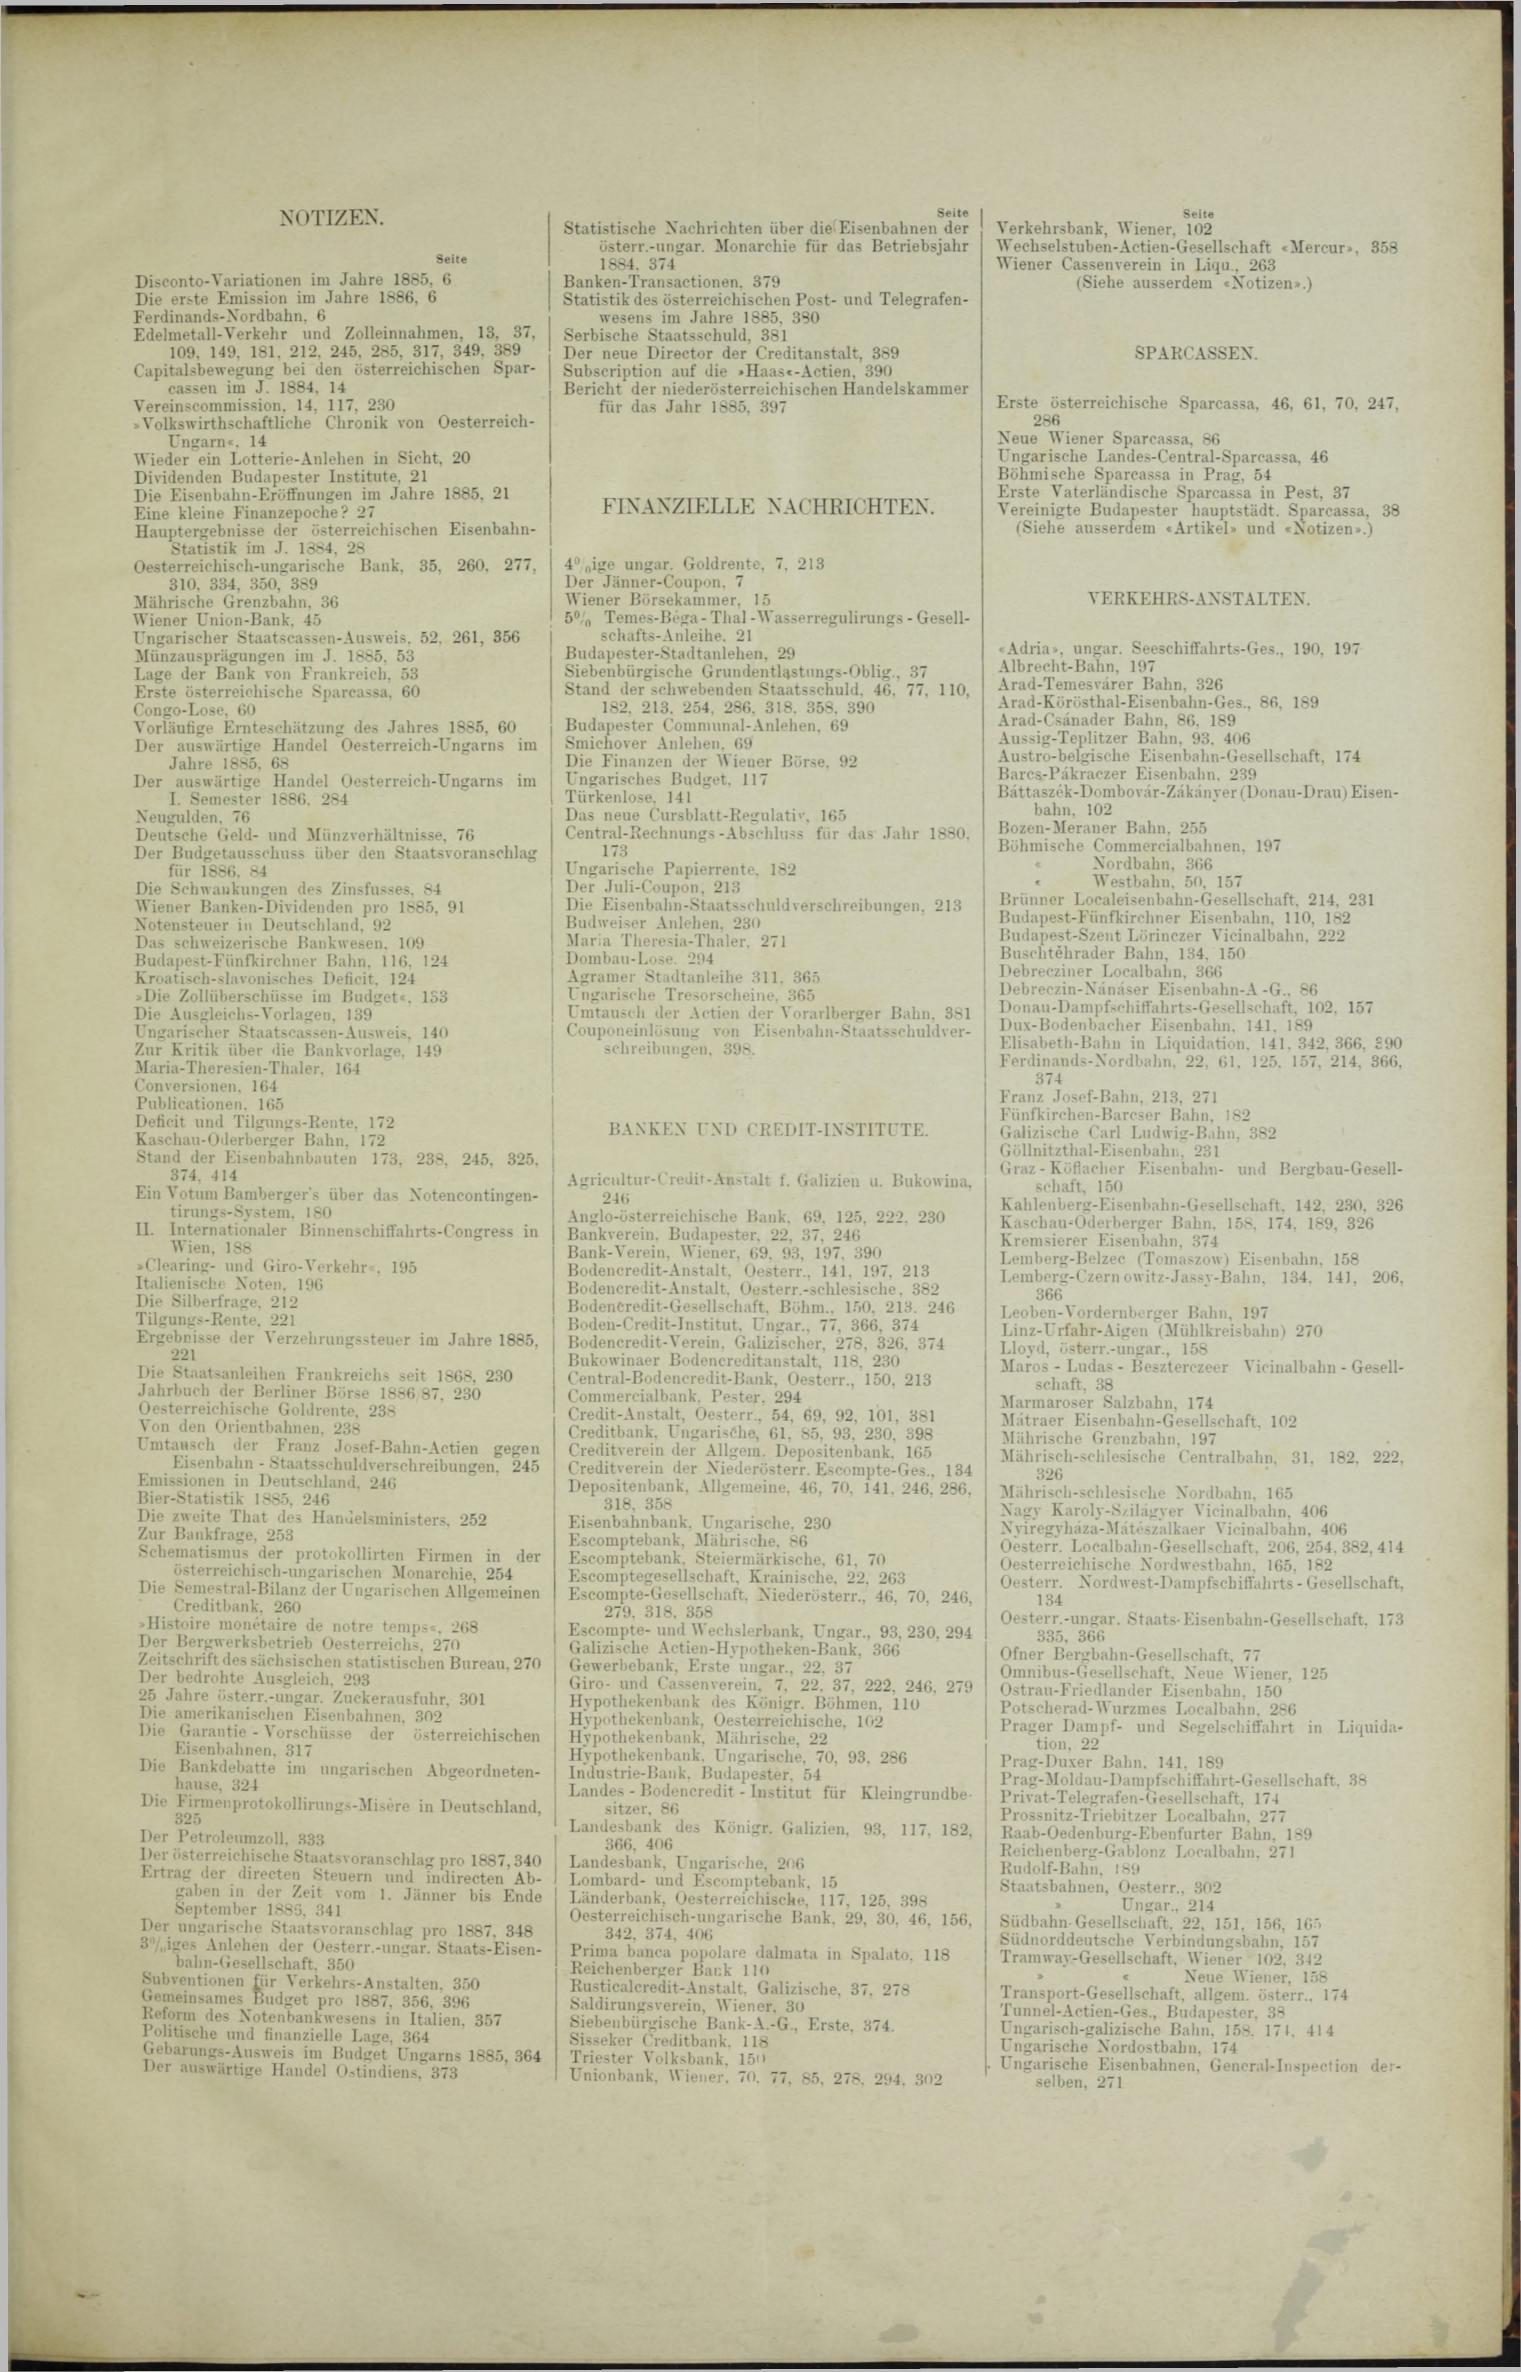 Der Tresor 10.06.1886 - Seite 11